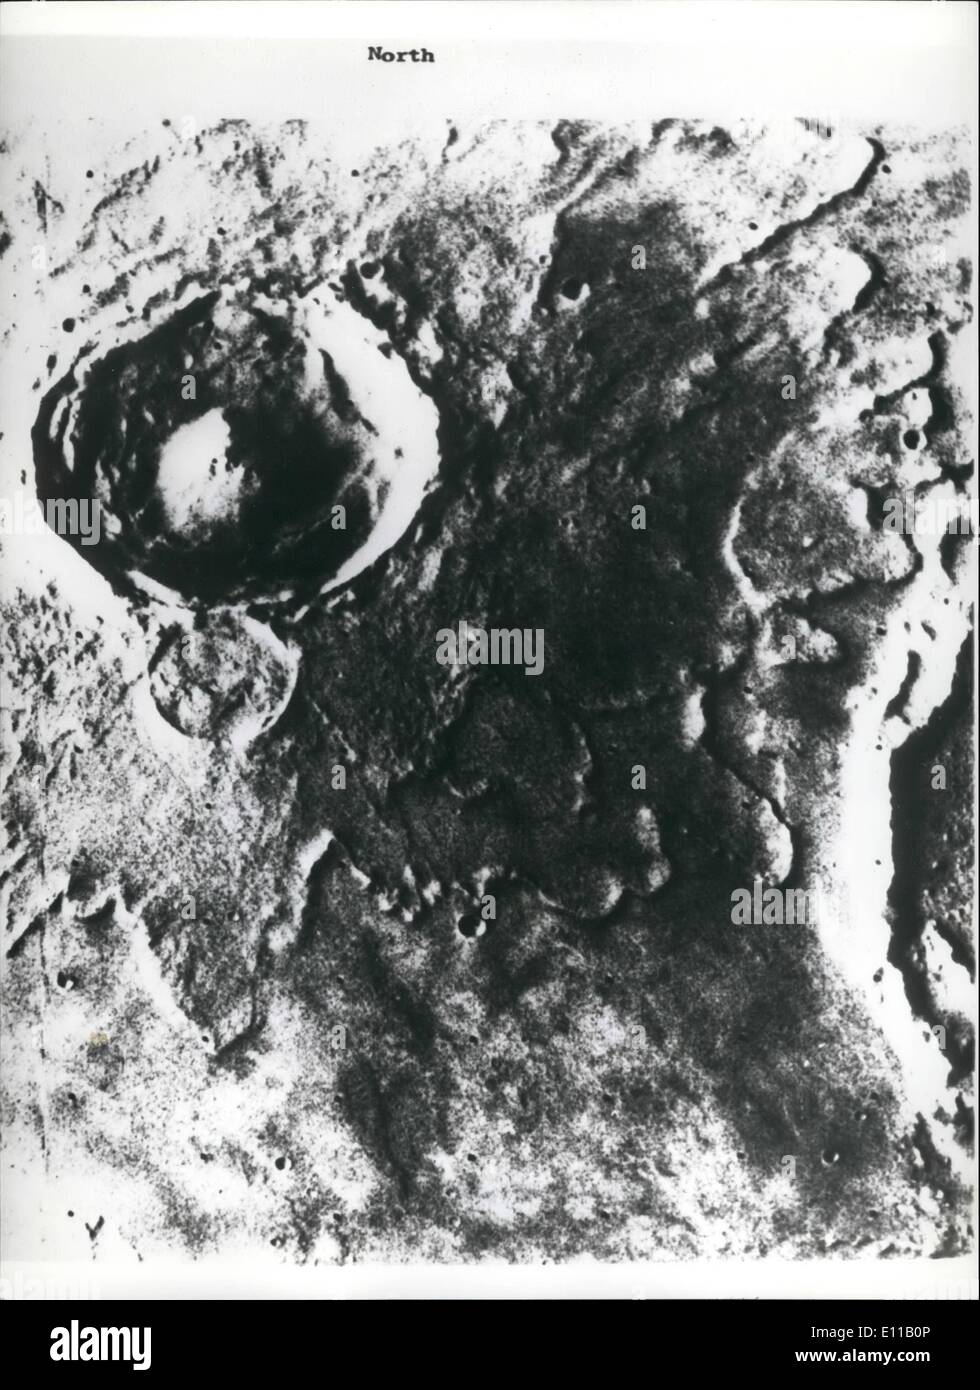 7. Juli 1976 - eine Nahaufnahme des Mars von der Raumsonde Viking 1 gemacht; Foto zeigt eine Nahaufnahme des Mars von Viking 1 Spececraft gemacht, wie es geht im Orbit über der Oberfläche Marsmenschen Raum Beamte haben festgestellt, dass dies der Krater Yuty, dem Raumschiff mögliche Landeplatz in der Nähe ist. Dieser Krater ist 1165 Meilen und Yuty Krater wurde wahrscheinlich von einem riesigen Meteoriten gebildet. Wind und Erosion und mögliche Wasser-Erosion hilft, Accentaste die Oberflächendetails. Stockfoto